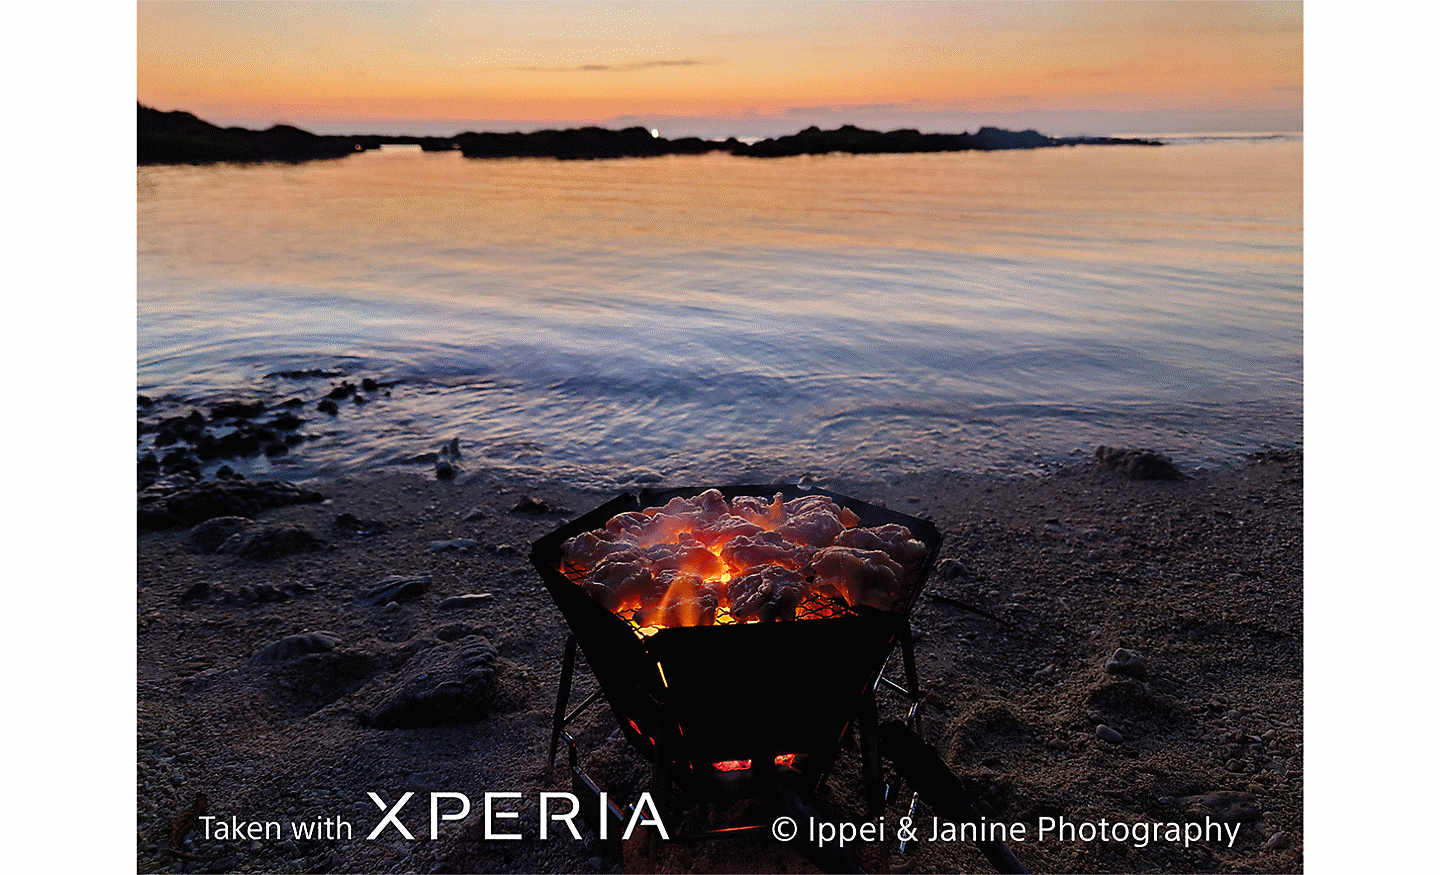 Feu de camp rougeoyant sur une plage au-dessus de l’eau, au coucher du soleil. Le texte indique : « Photo prise avec un XPERIA © Ippei & Janine Photography ».